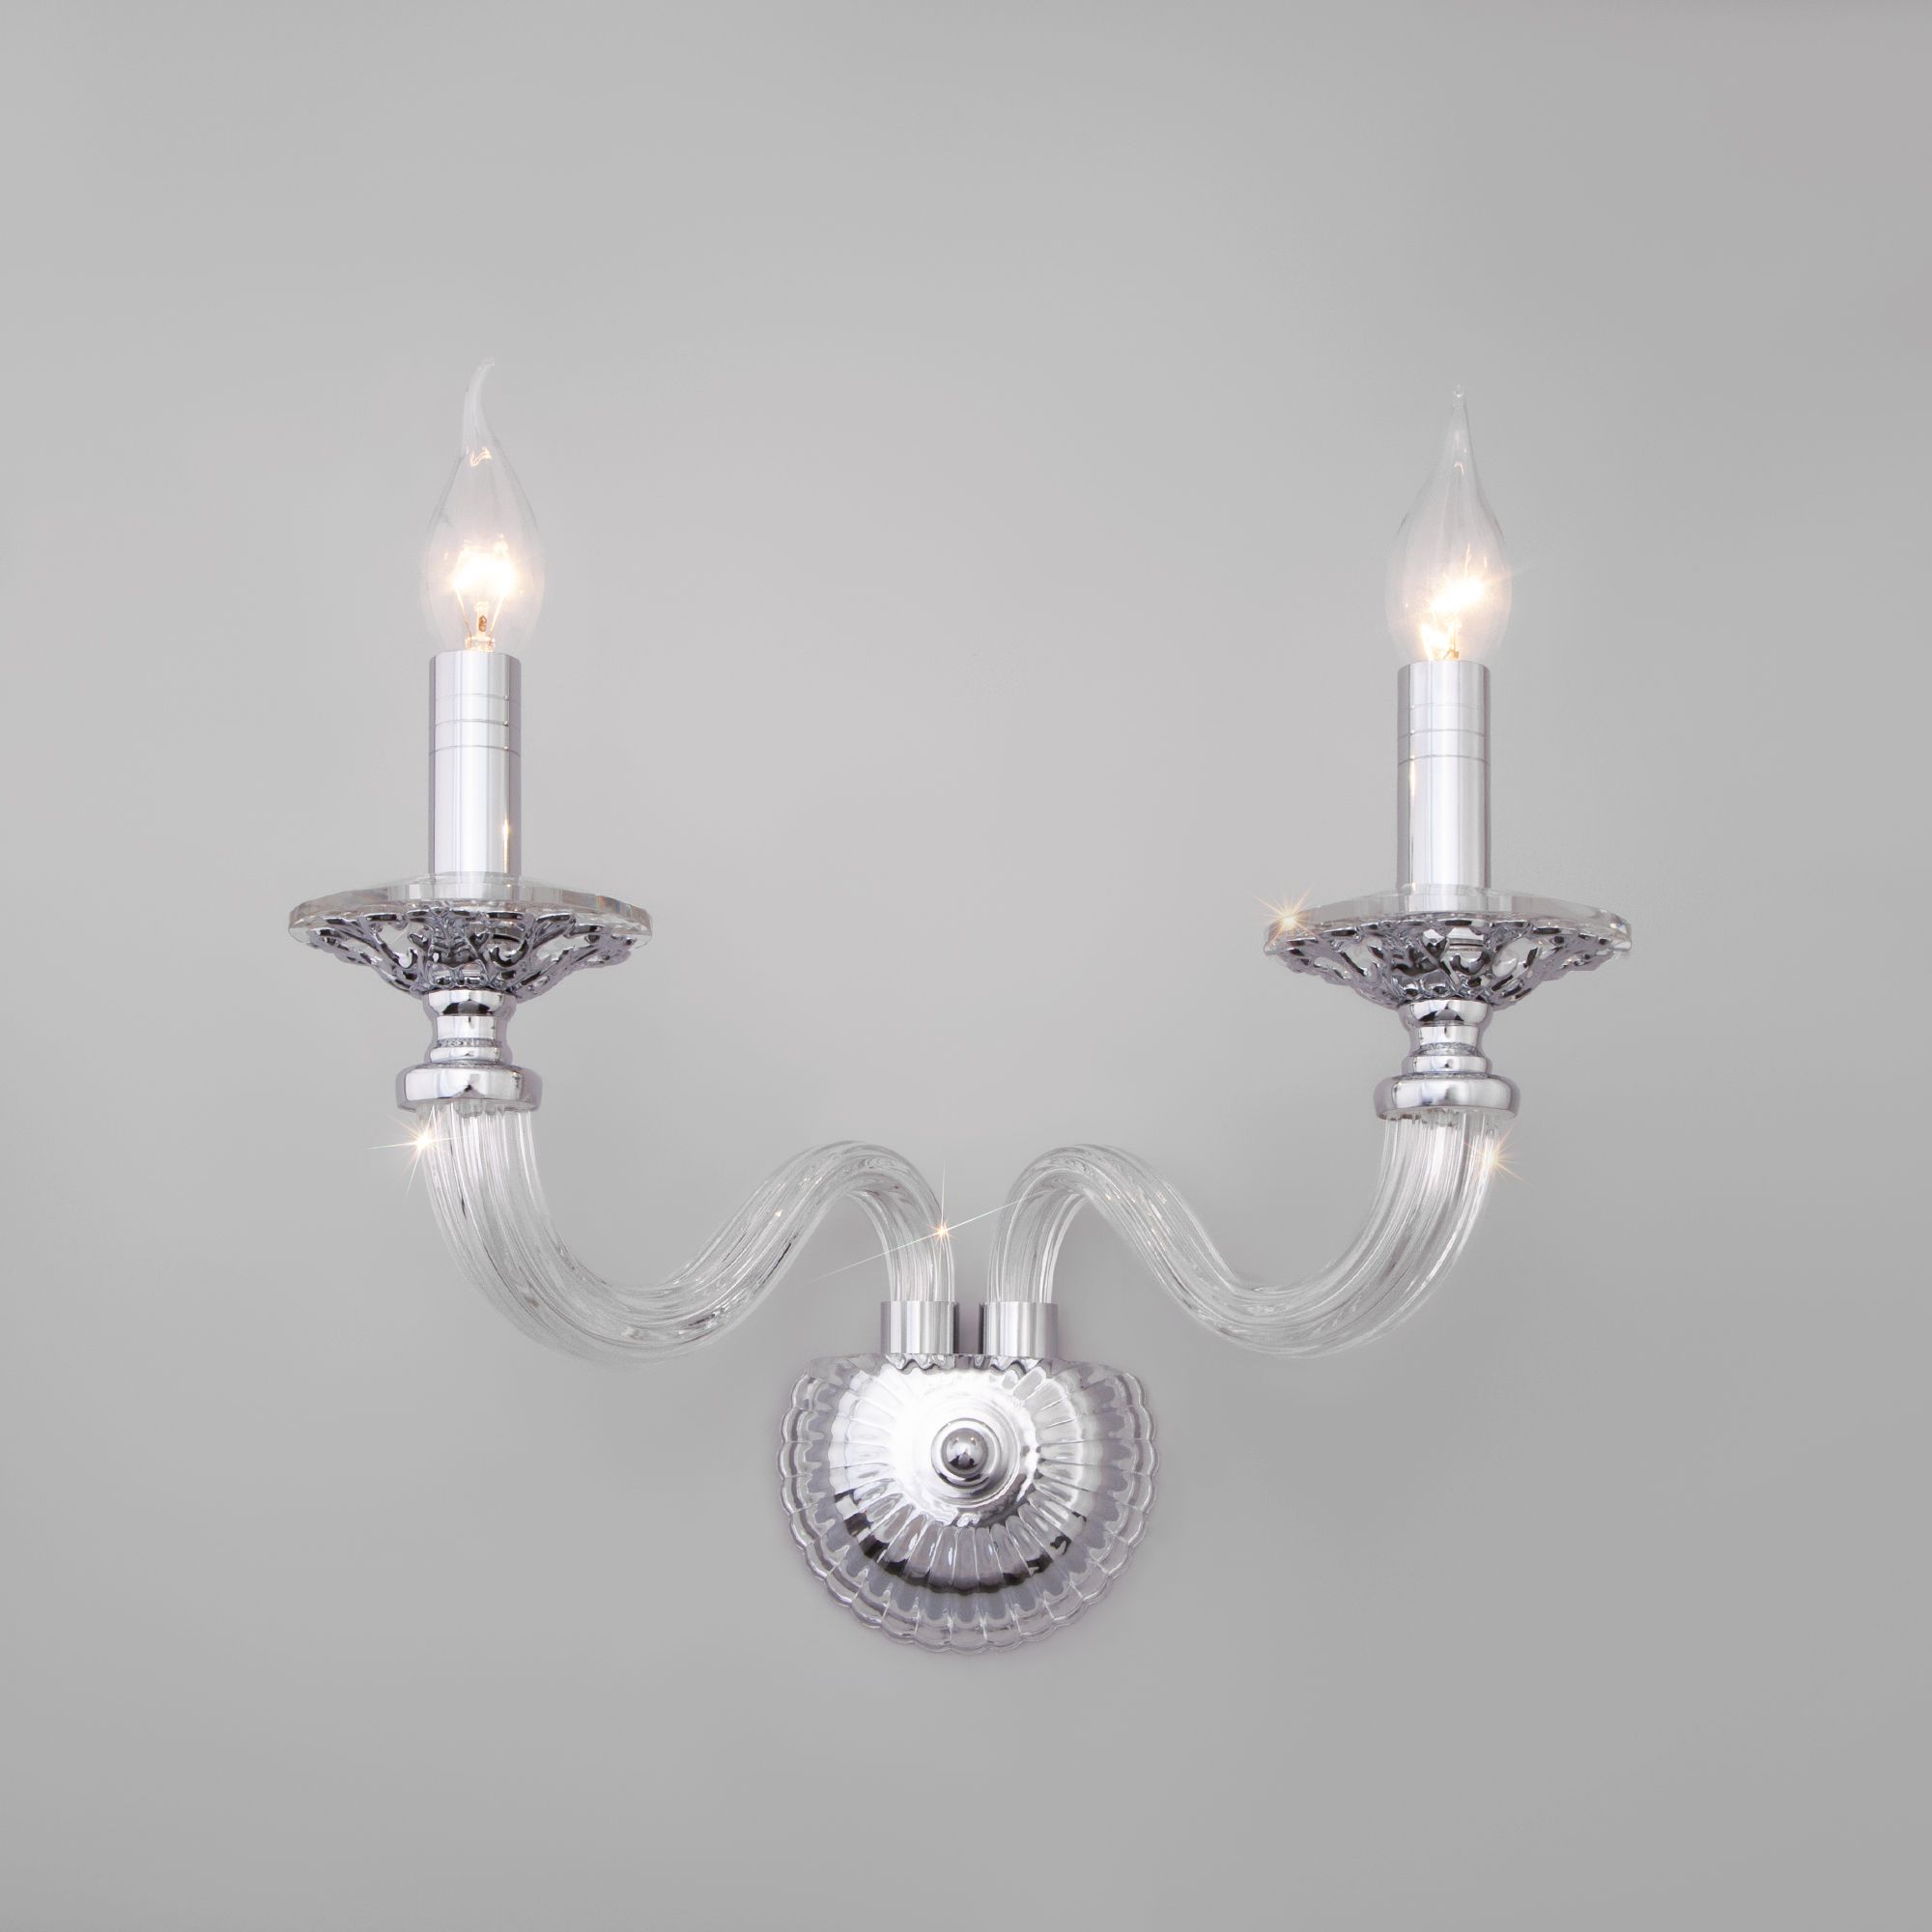 Настенный светильник в классическом стиле Bogate's Olenna 338/2. Фото 1